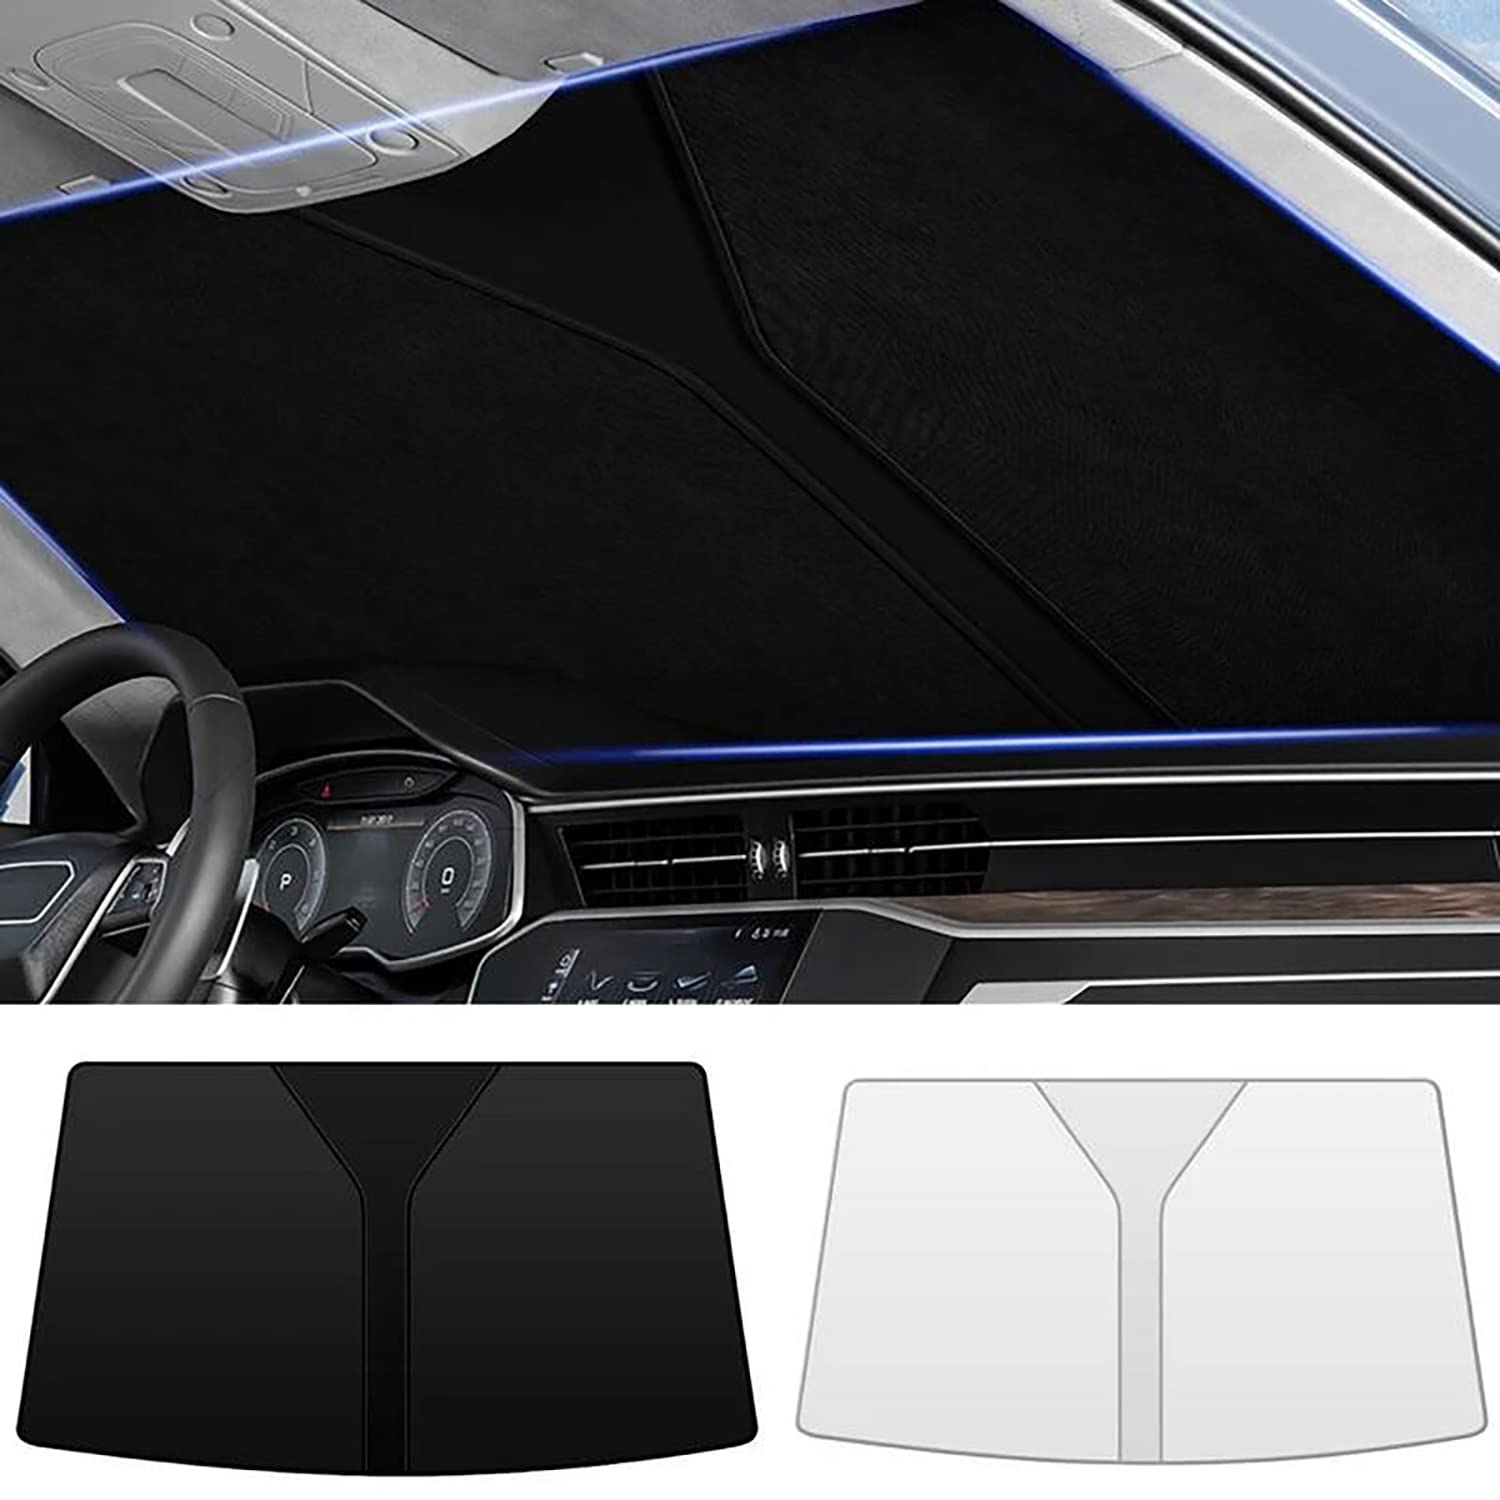 Frontscheiben Sonnenschutz Passend für VW Arteon 2017 2018 2019 2020 2021 2022+, Hitzeschutz Auto UV-Reflexion, Faltbares Design, Einfache Lagerung,- Silver von TANEND